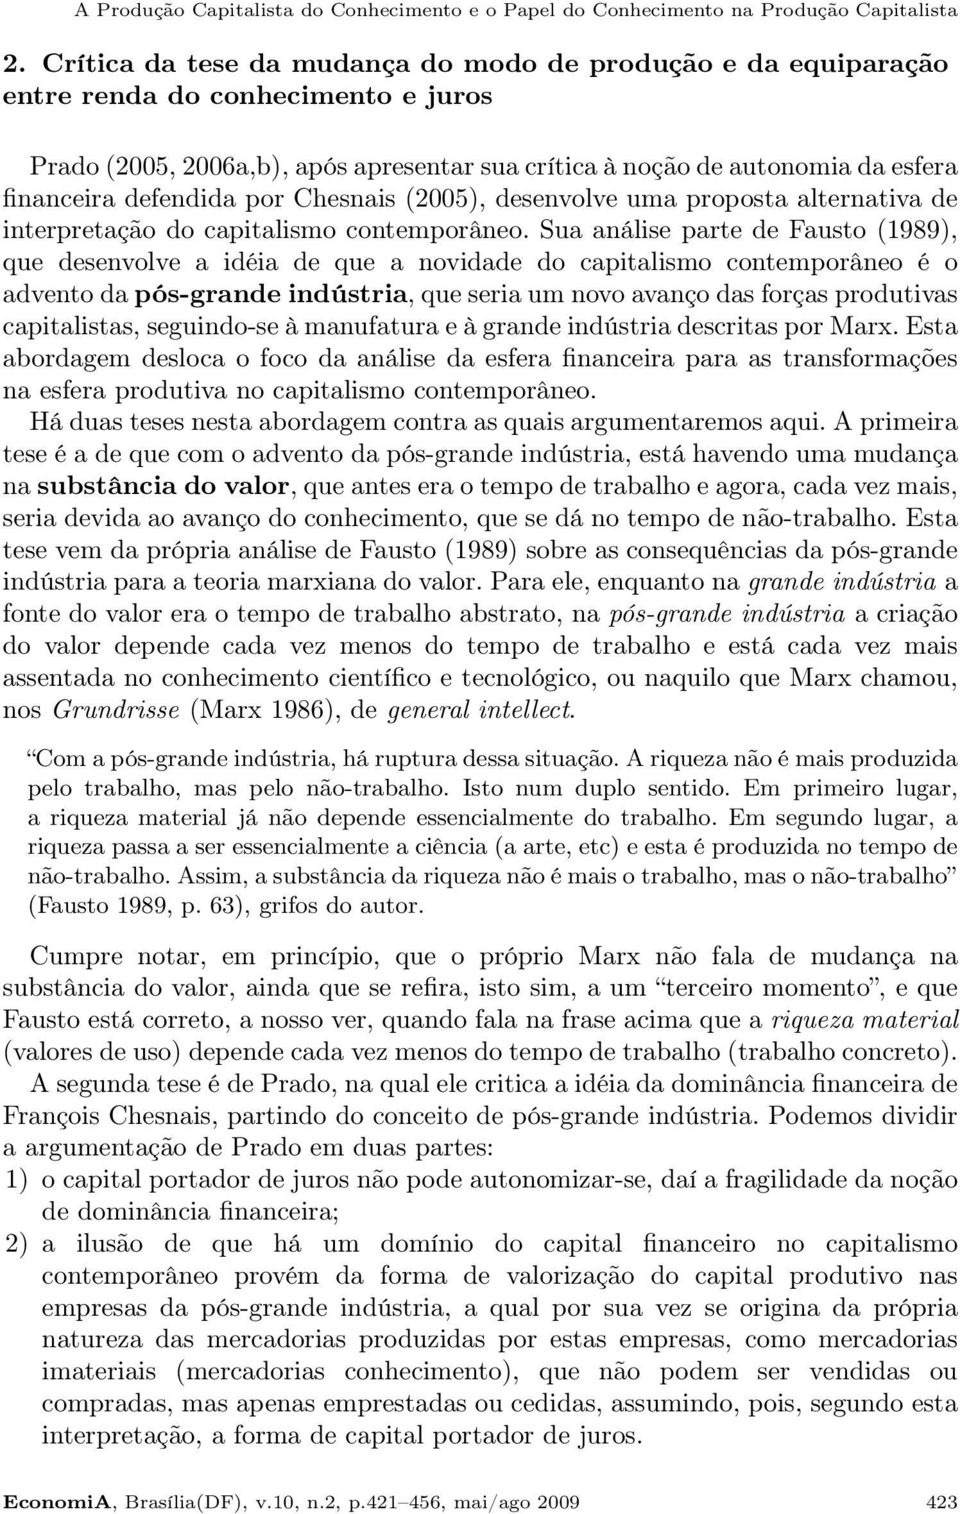 defendida por Chesnais (2005), desenvolve uma proposta alternativa de interpretação do capitalismo contemporâneo.